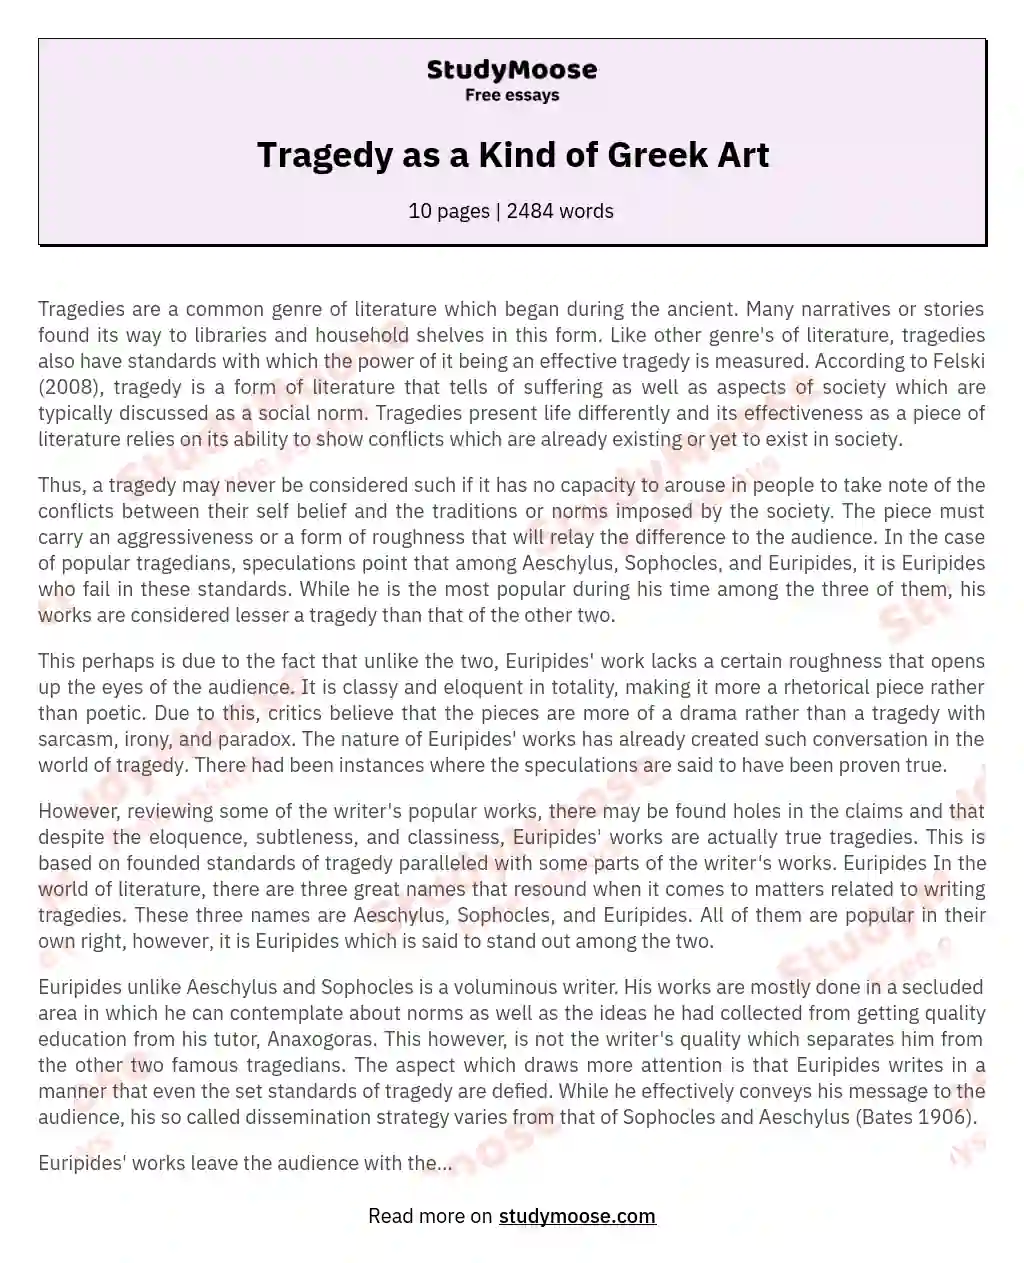 Tragedy as a Kind of Greek Art essay